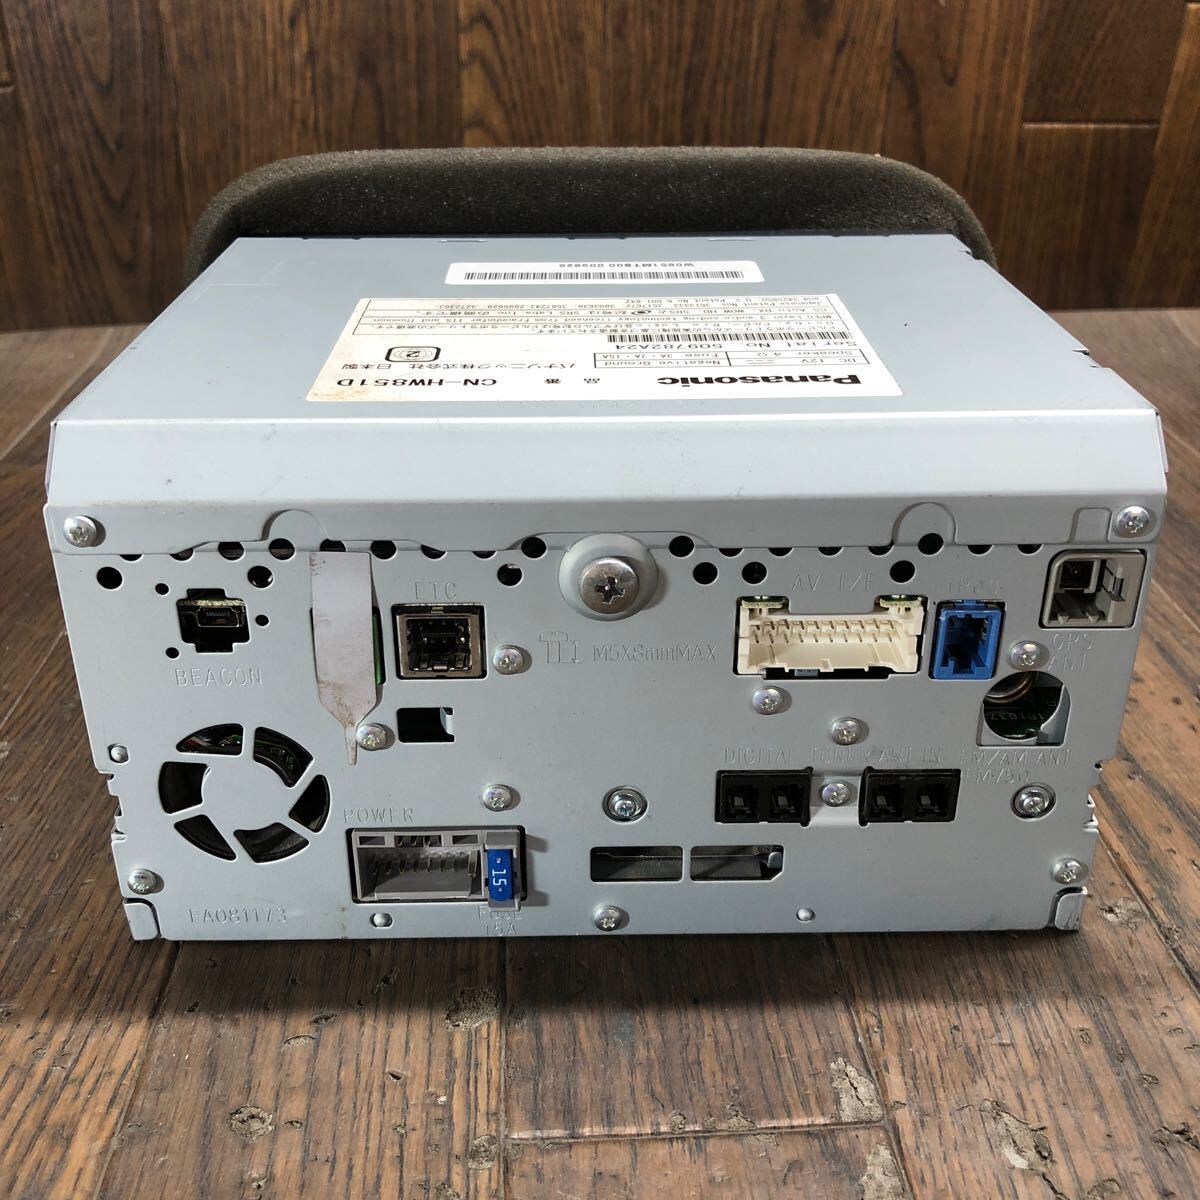 AV4-126  очень дешево   машина  navi  Panasonic CN-HW851D 509782A24 HDD navi  CD DVD  сам товар   только   запуск  проверка произведена    подержанный товар  товар в состоянии "как есть" 